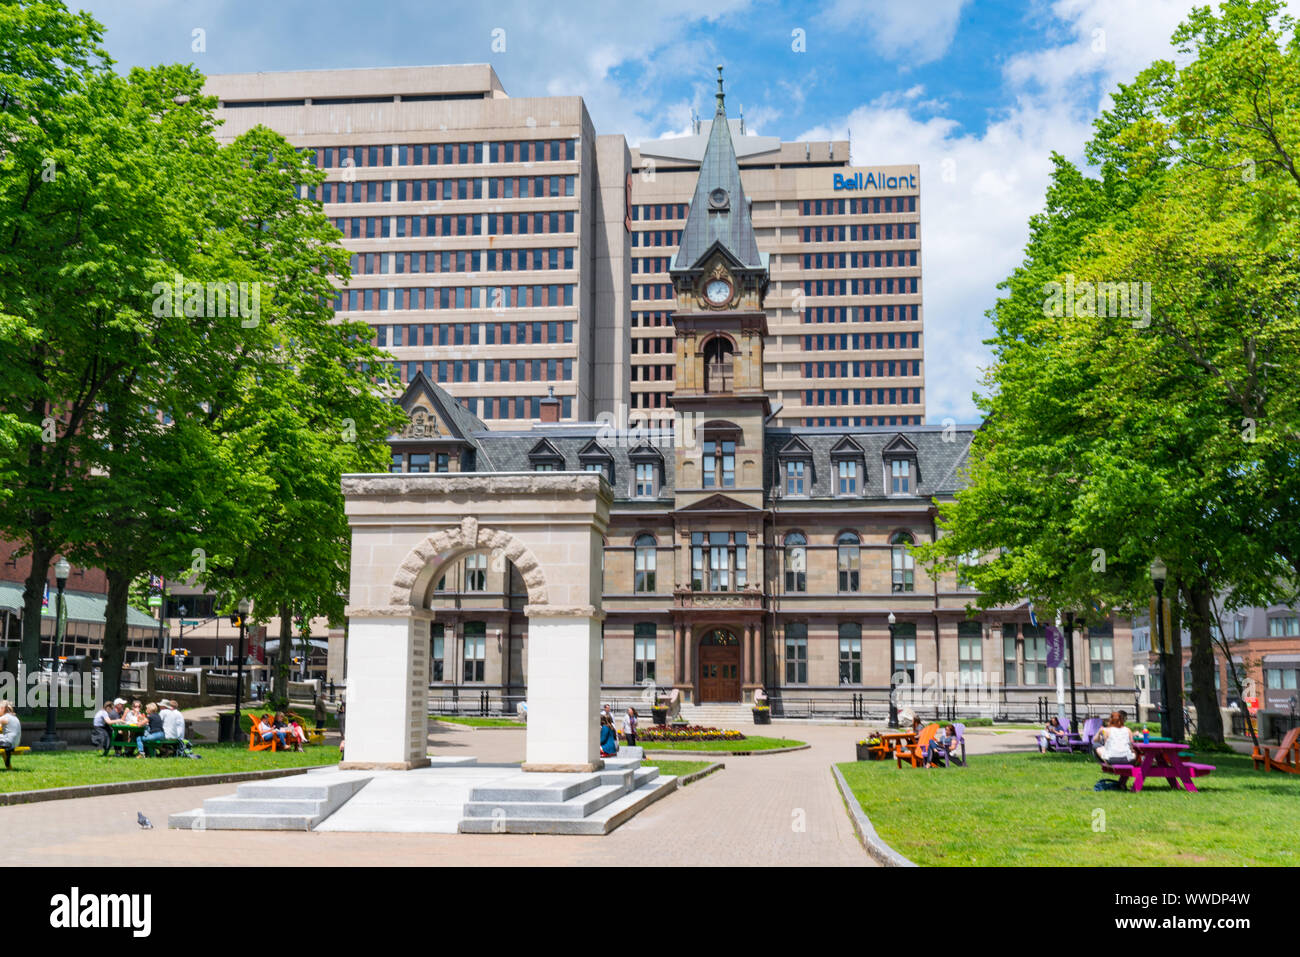 Halifax, Canada - le 19 juin 2019 : Halifax City Hall Building sur la place Grand Parade Square à Halifax, Nouvelle-Écosse, Canada Banque D'Images